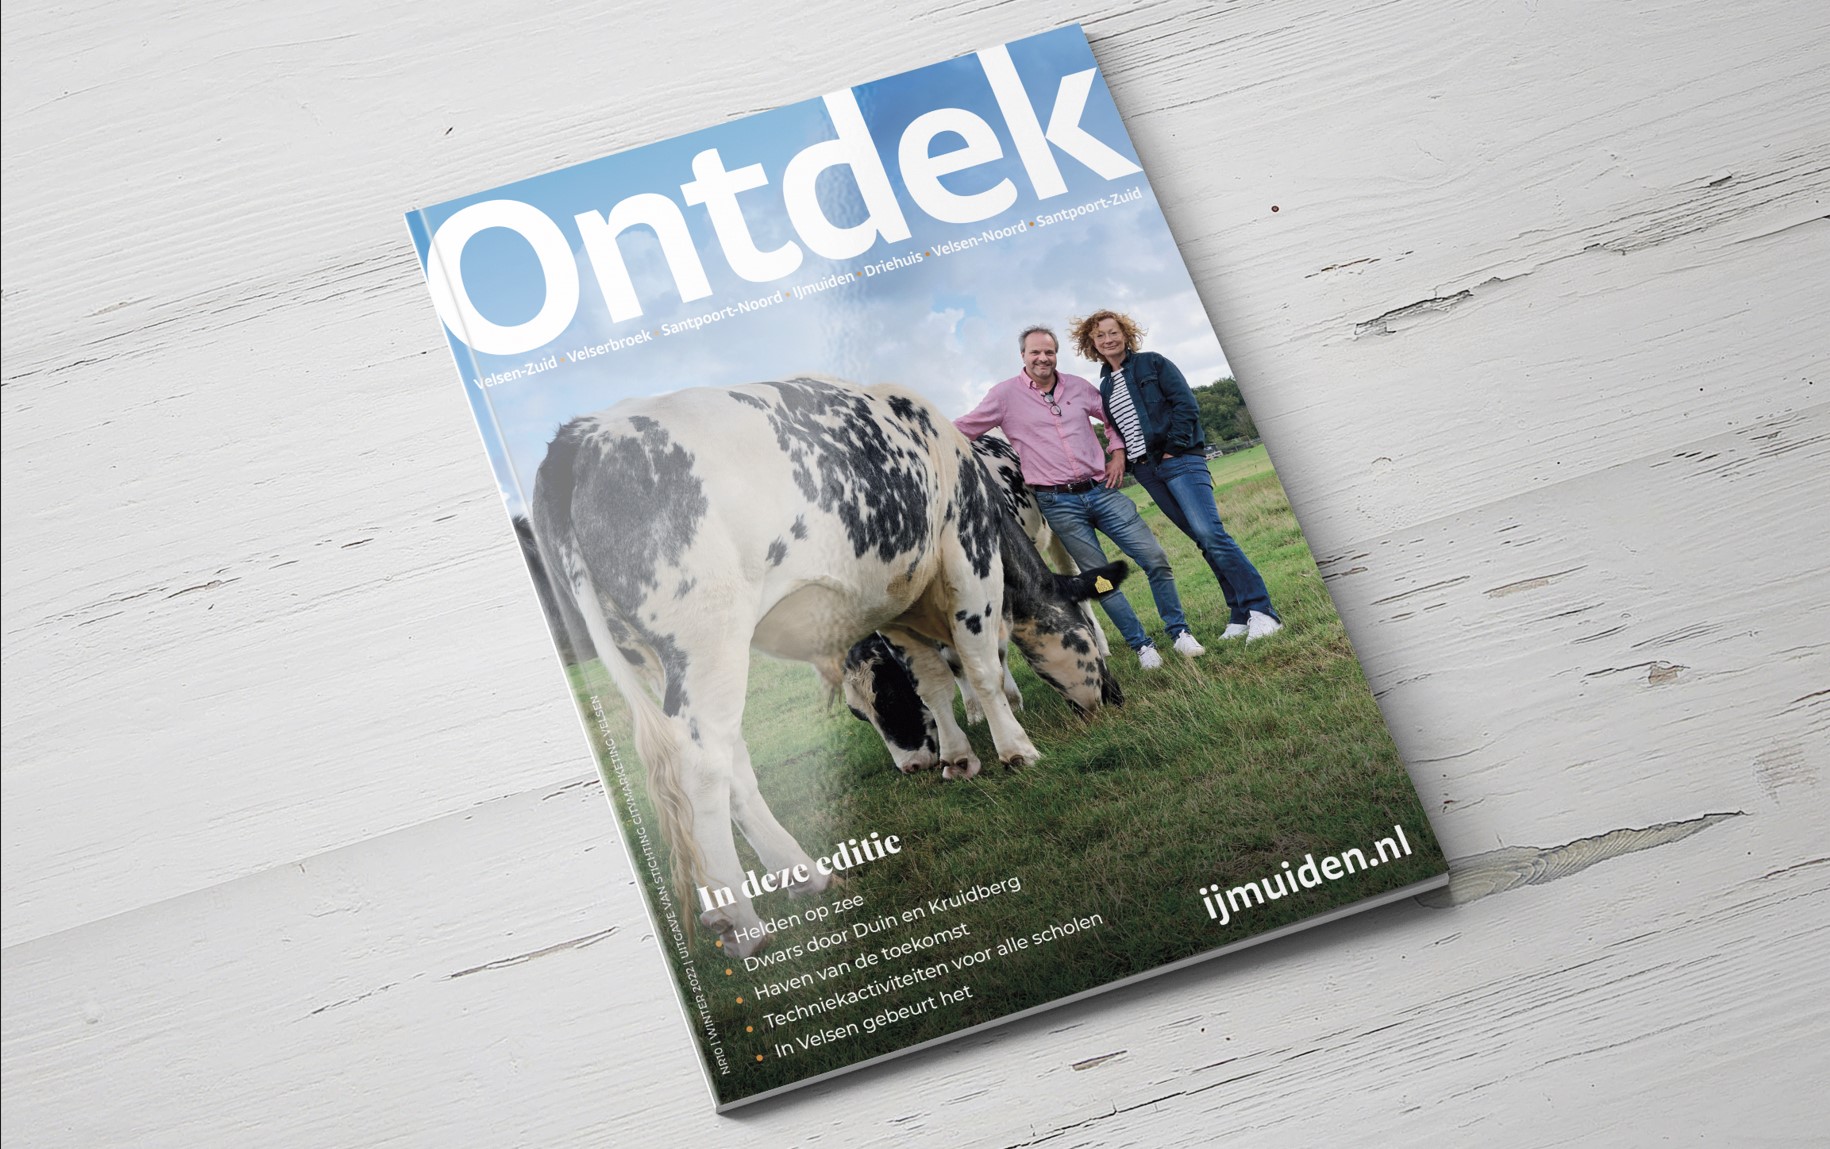 Tiende Ontdek Velsen-magazine verschijnt als e-zine